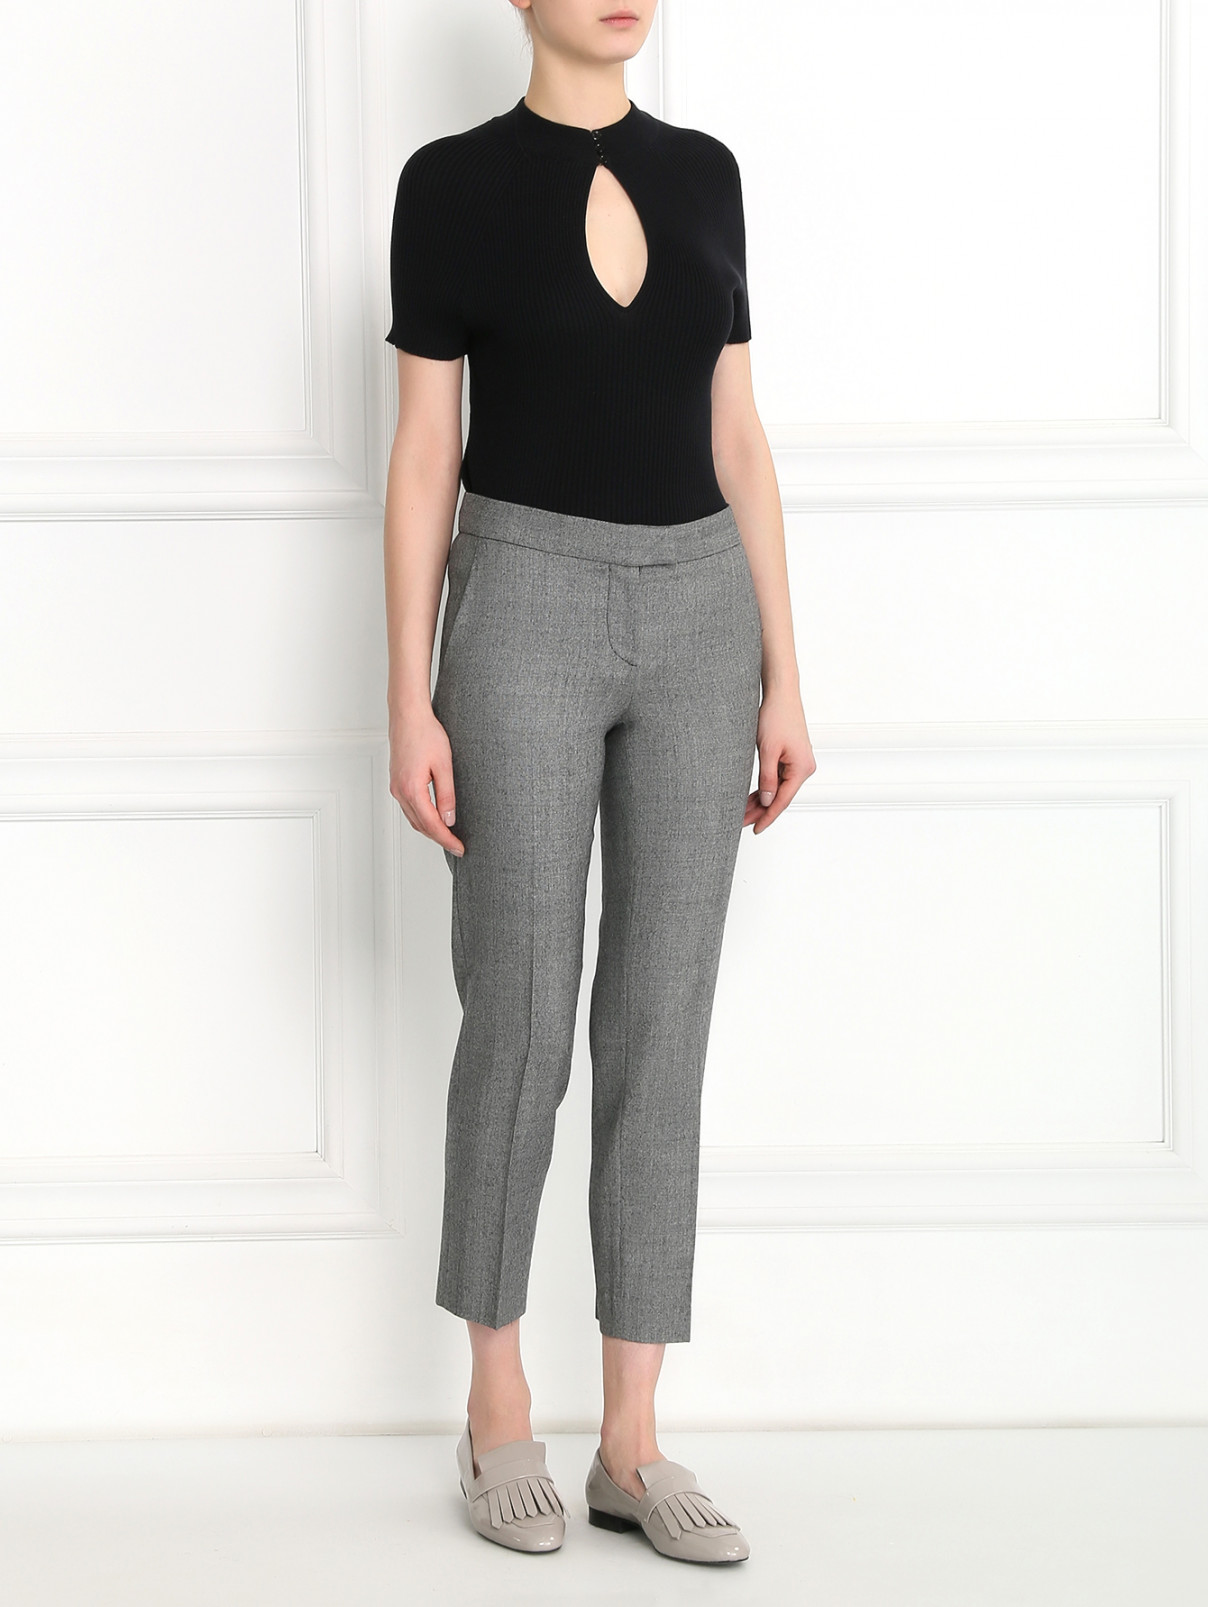 Укороченные брюки из шерсти Moschino Cheap&Chic  –  Модель Общий вид  – Цвет:  Серый